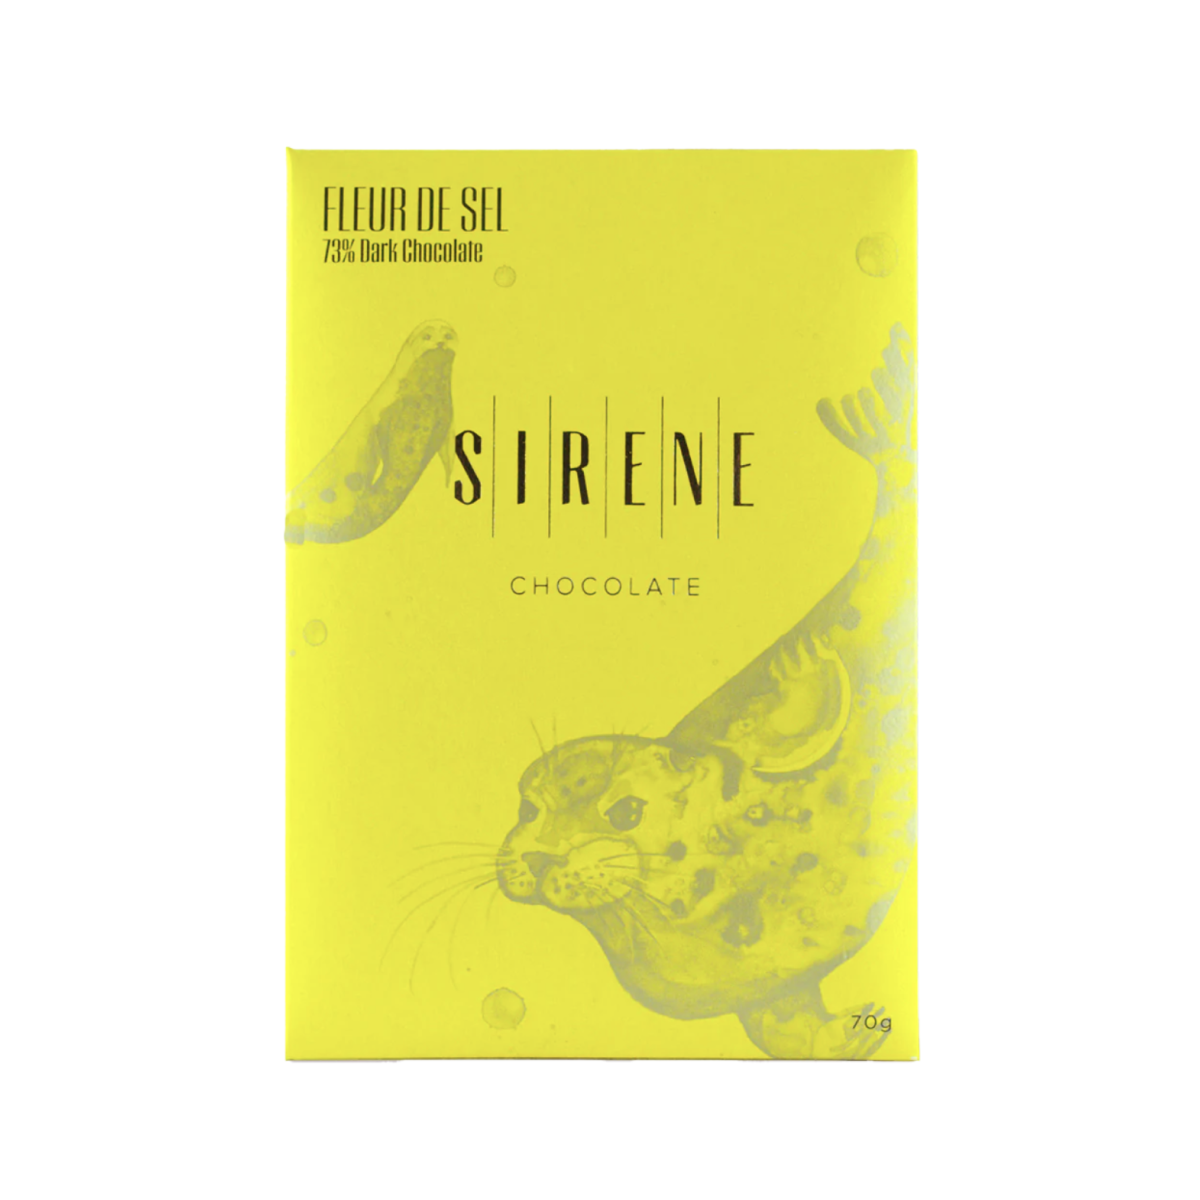 Sirene Chocolate - Fleur de Sel (73% Dark Chocolate)